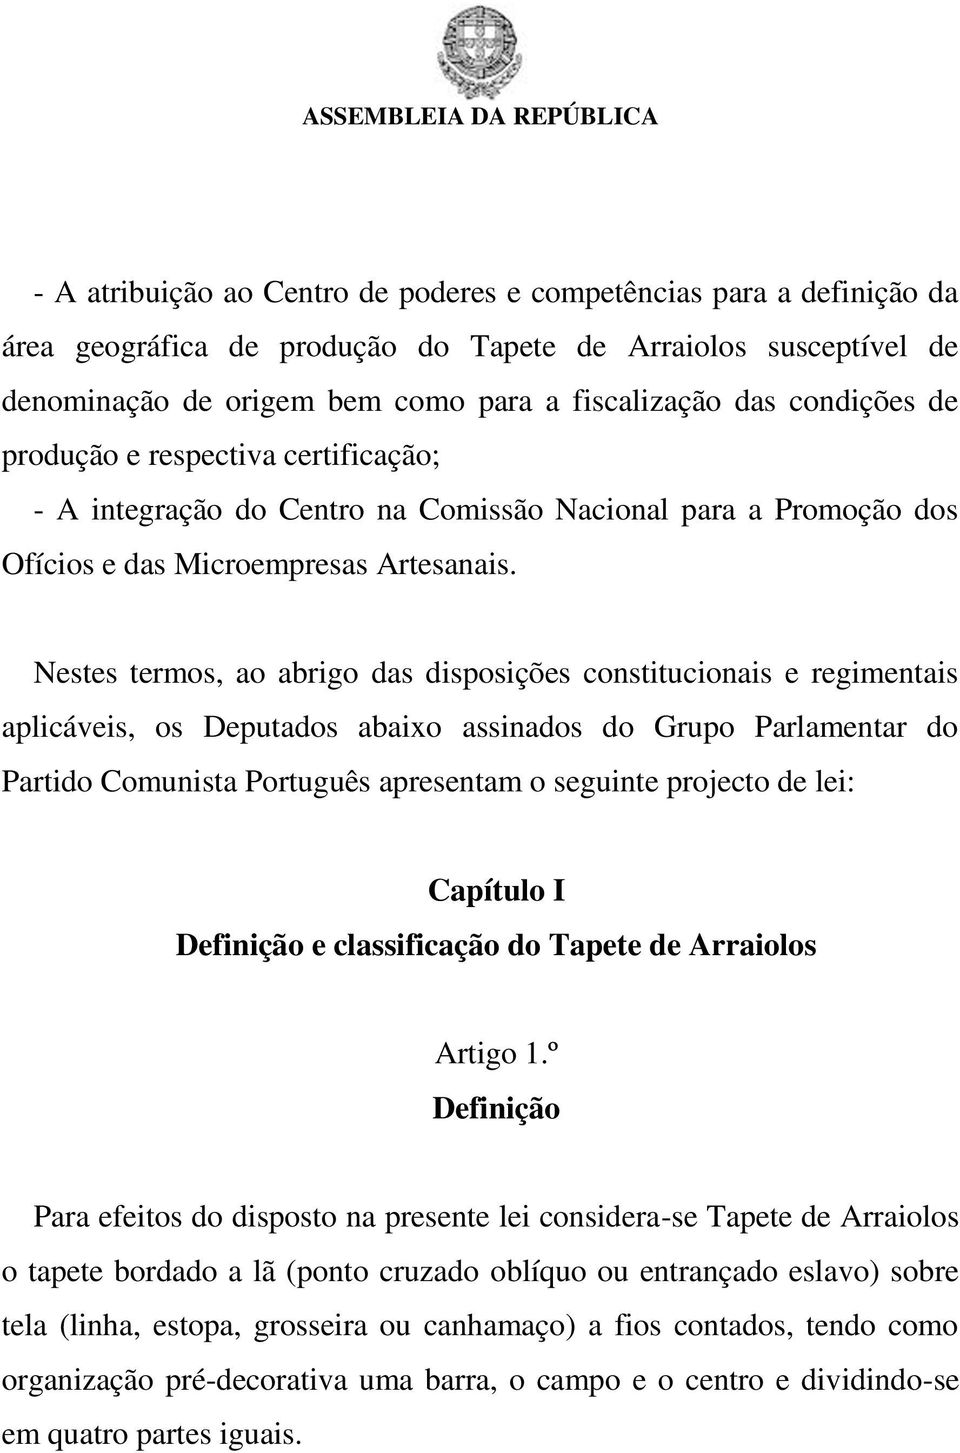 Nestes termos, ao abrigo das disposições constitucionais e regimentais aplicáveis, os Deputados abaixo assinados do Grupo Parlamentar do Partido Comunista Português apresentam o seguinte projecto de